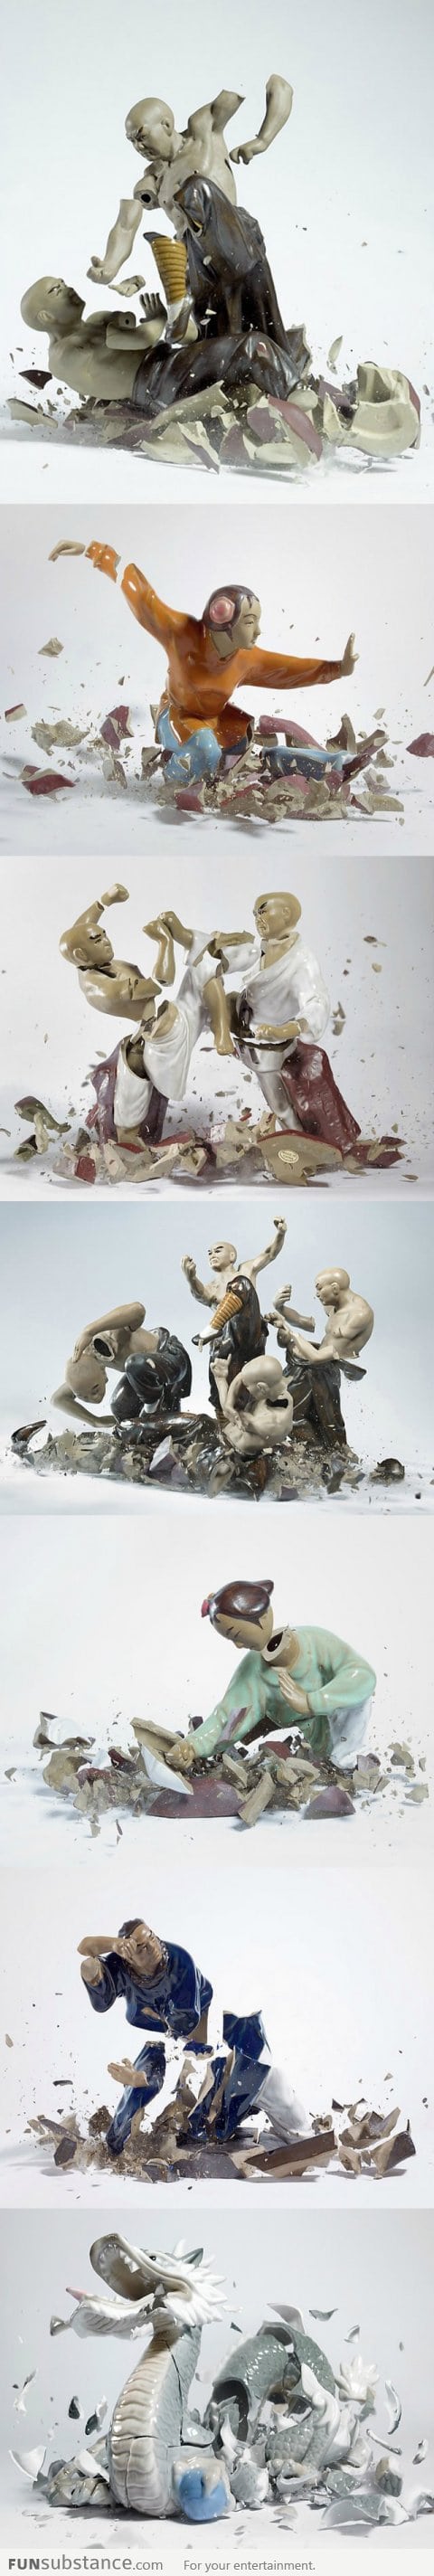 Shattering Porcelain Fighting Figures